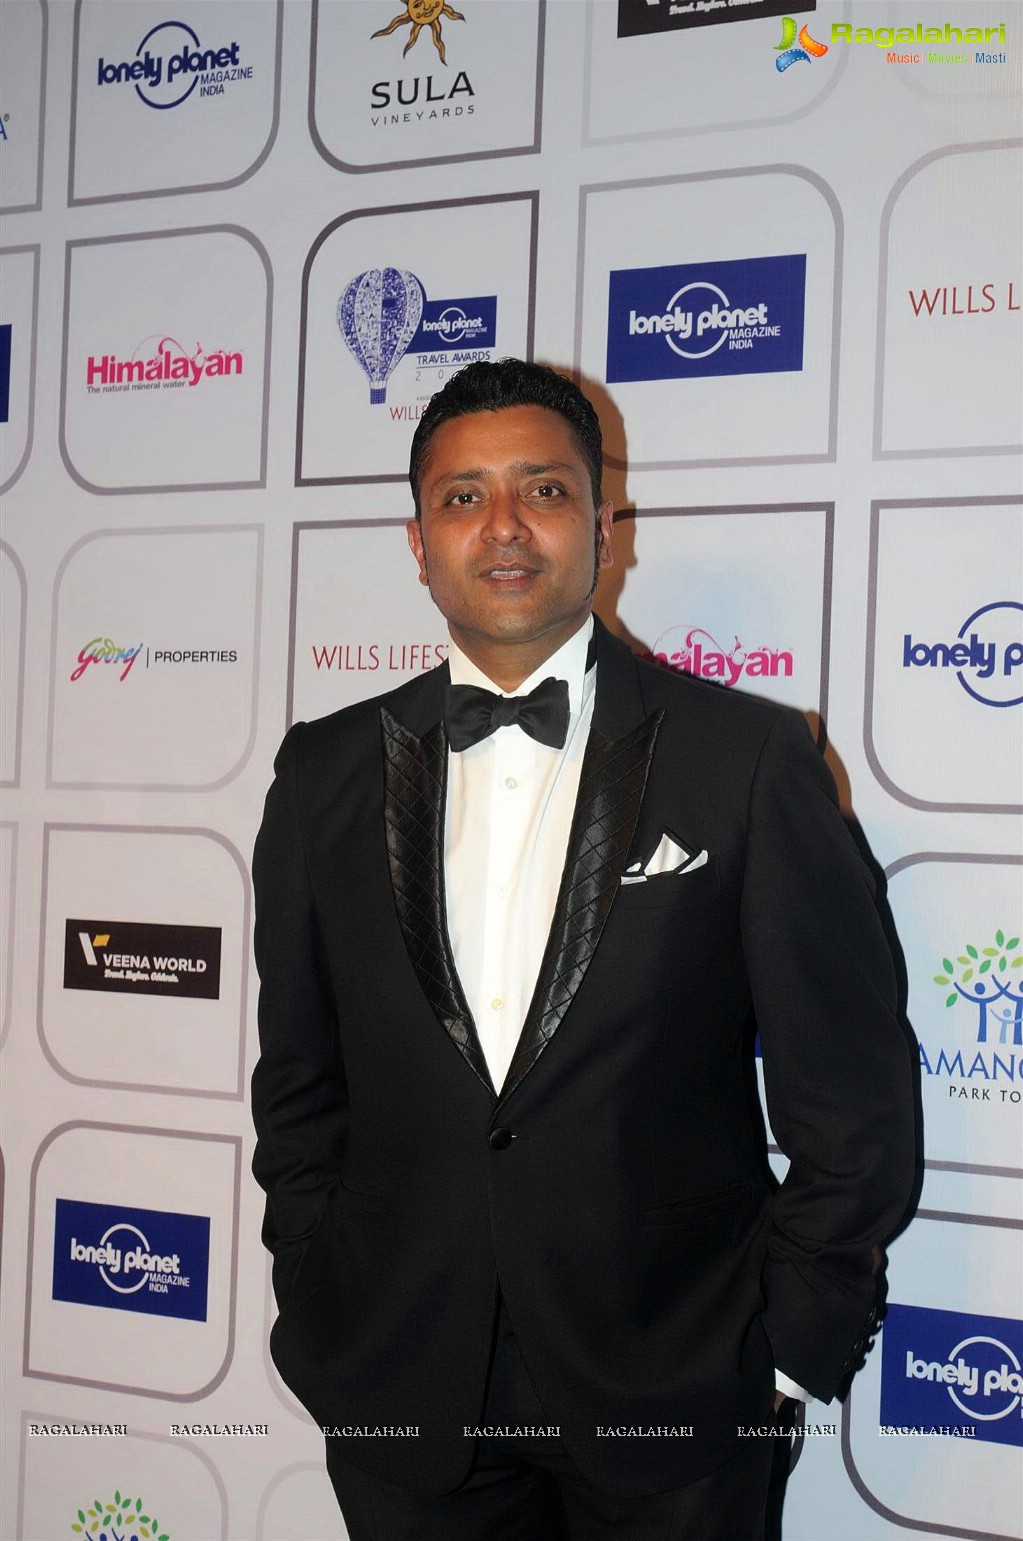 Lonely Planet Magazine India Travel Awards 2014, Mumbai